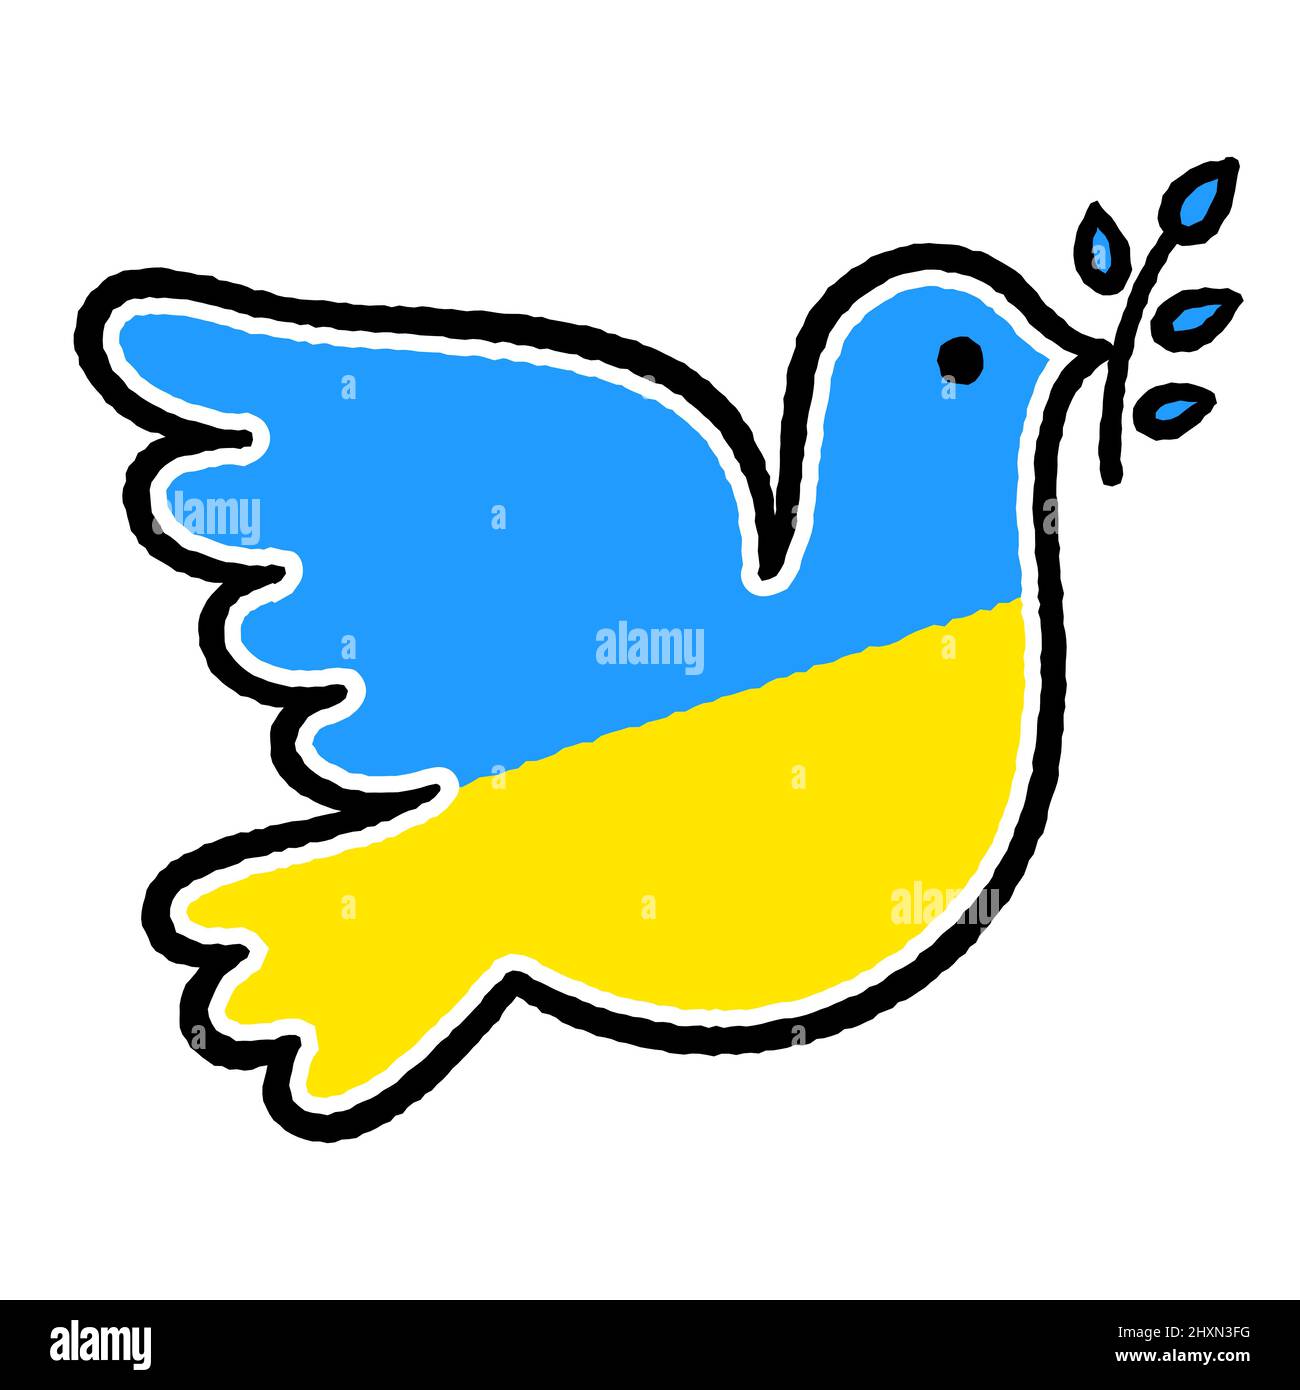 Colomba di pace nei colori della bandiera Ucraina. Fermare la guerra in Ucraina. Semplice simbolo disegnato a mano, illustrazione vettoriale. Illustrazione Vettoriale